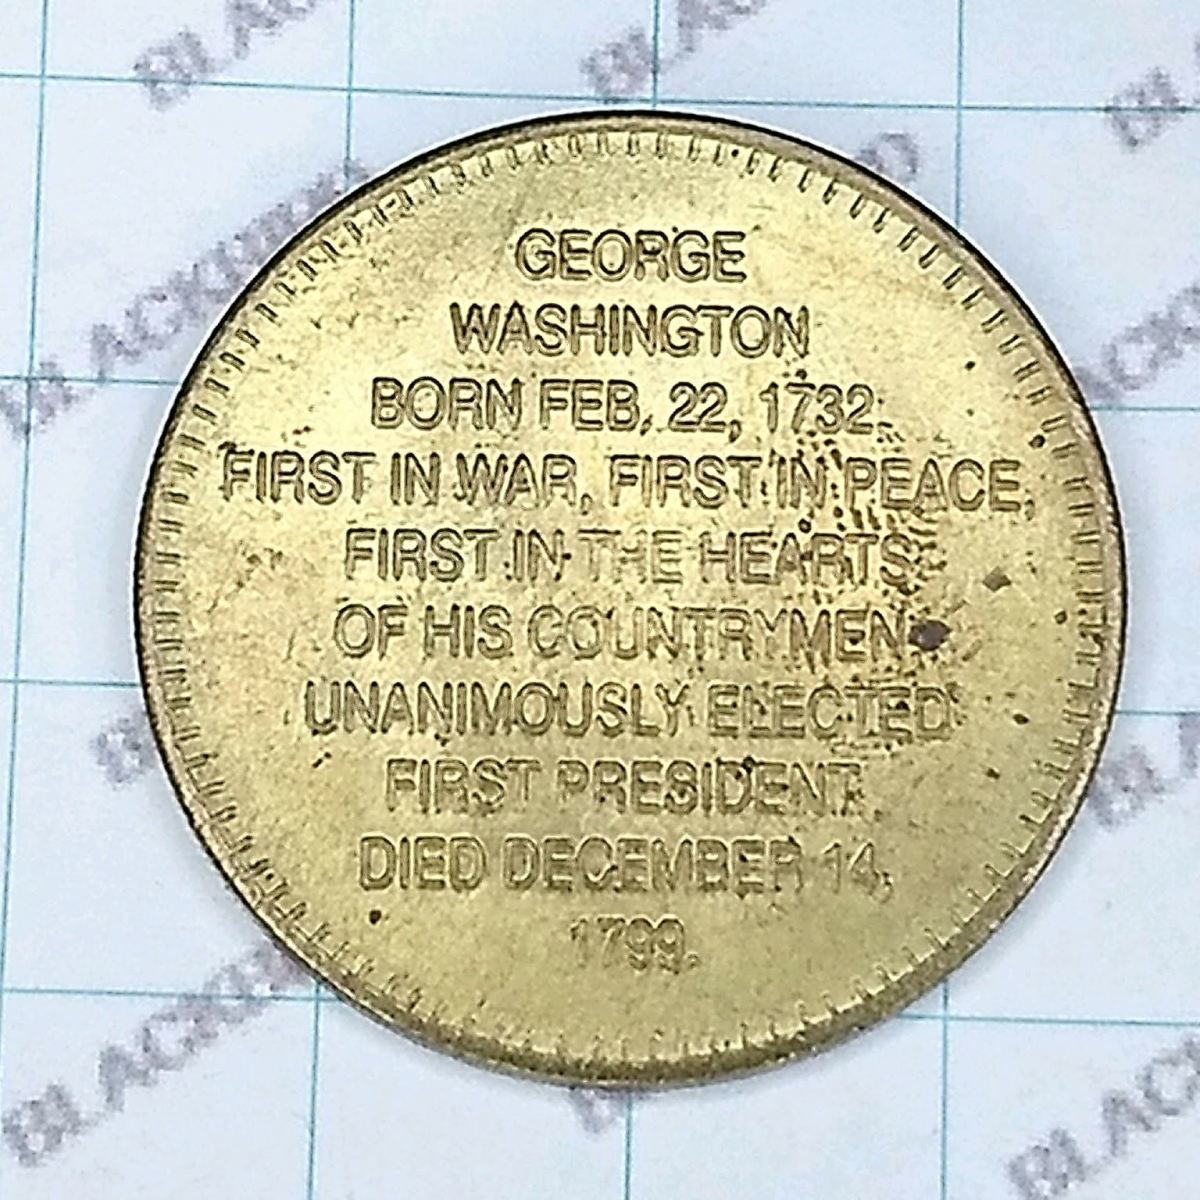 送料無料)初代アメリカ合衆国大統領 ジョージ・ワシントン 記念コイン 10.11g A03931_画像2